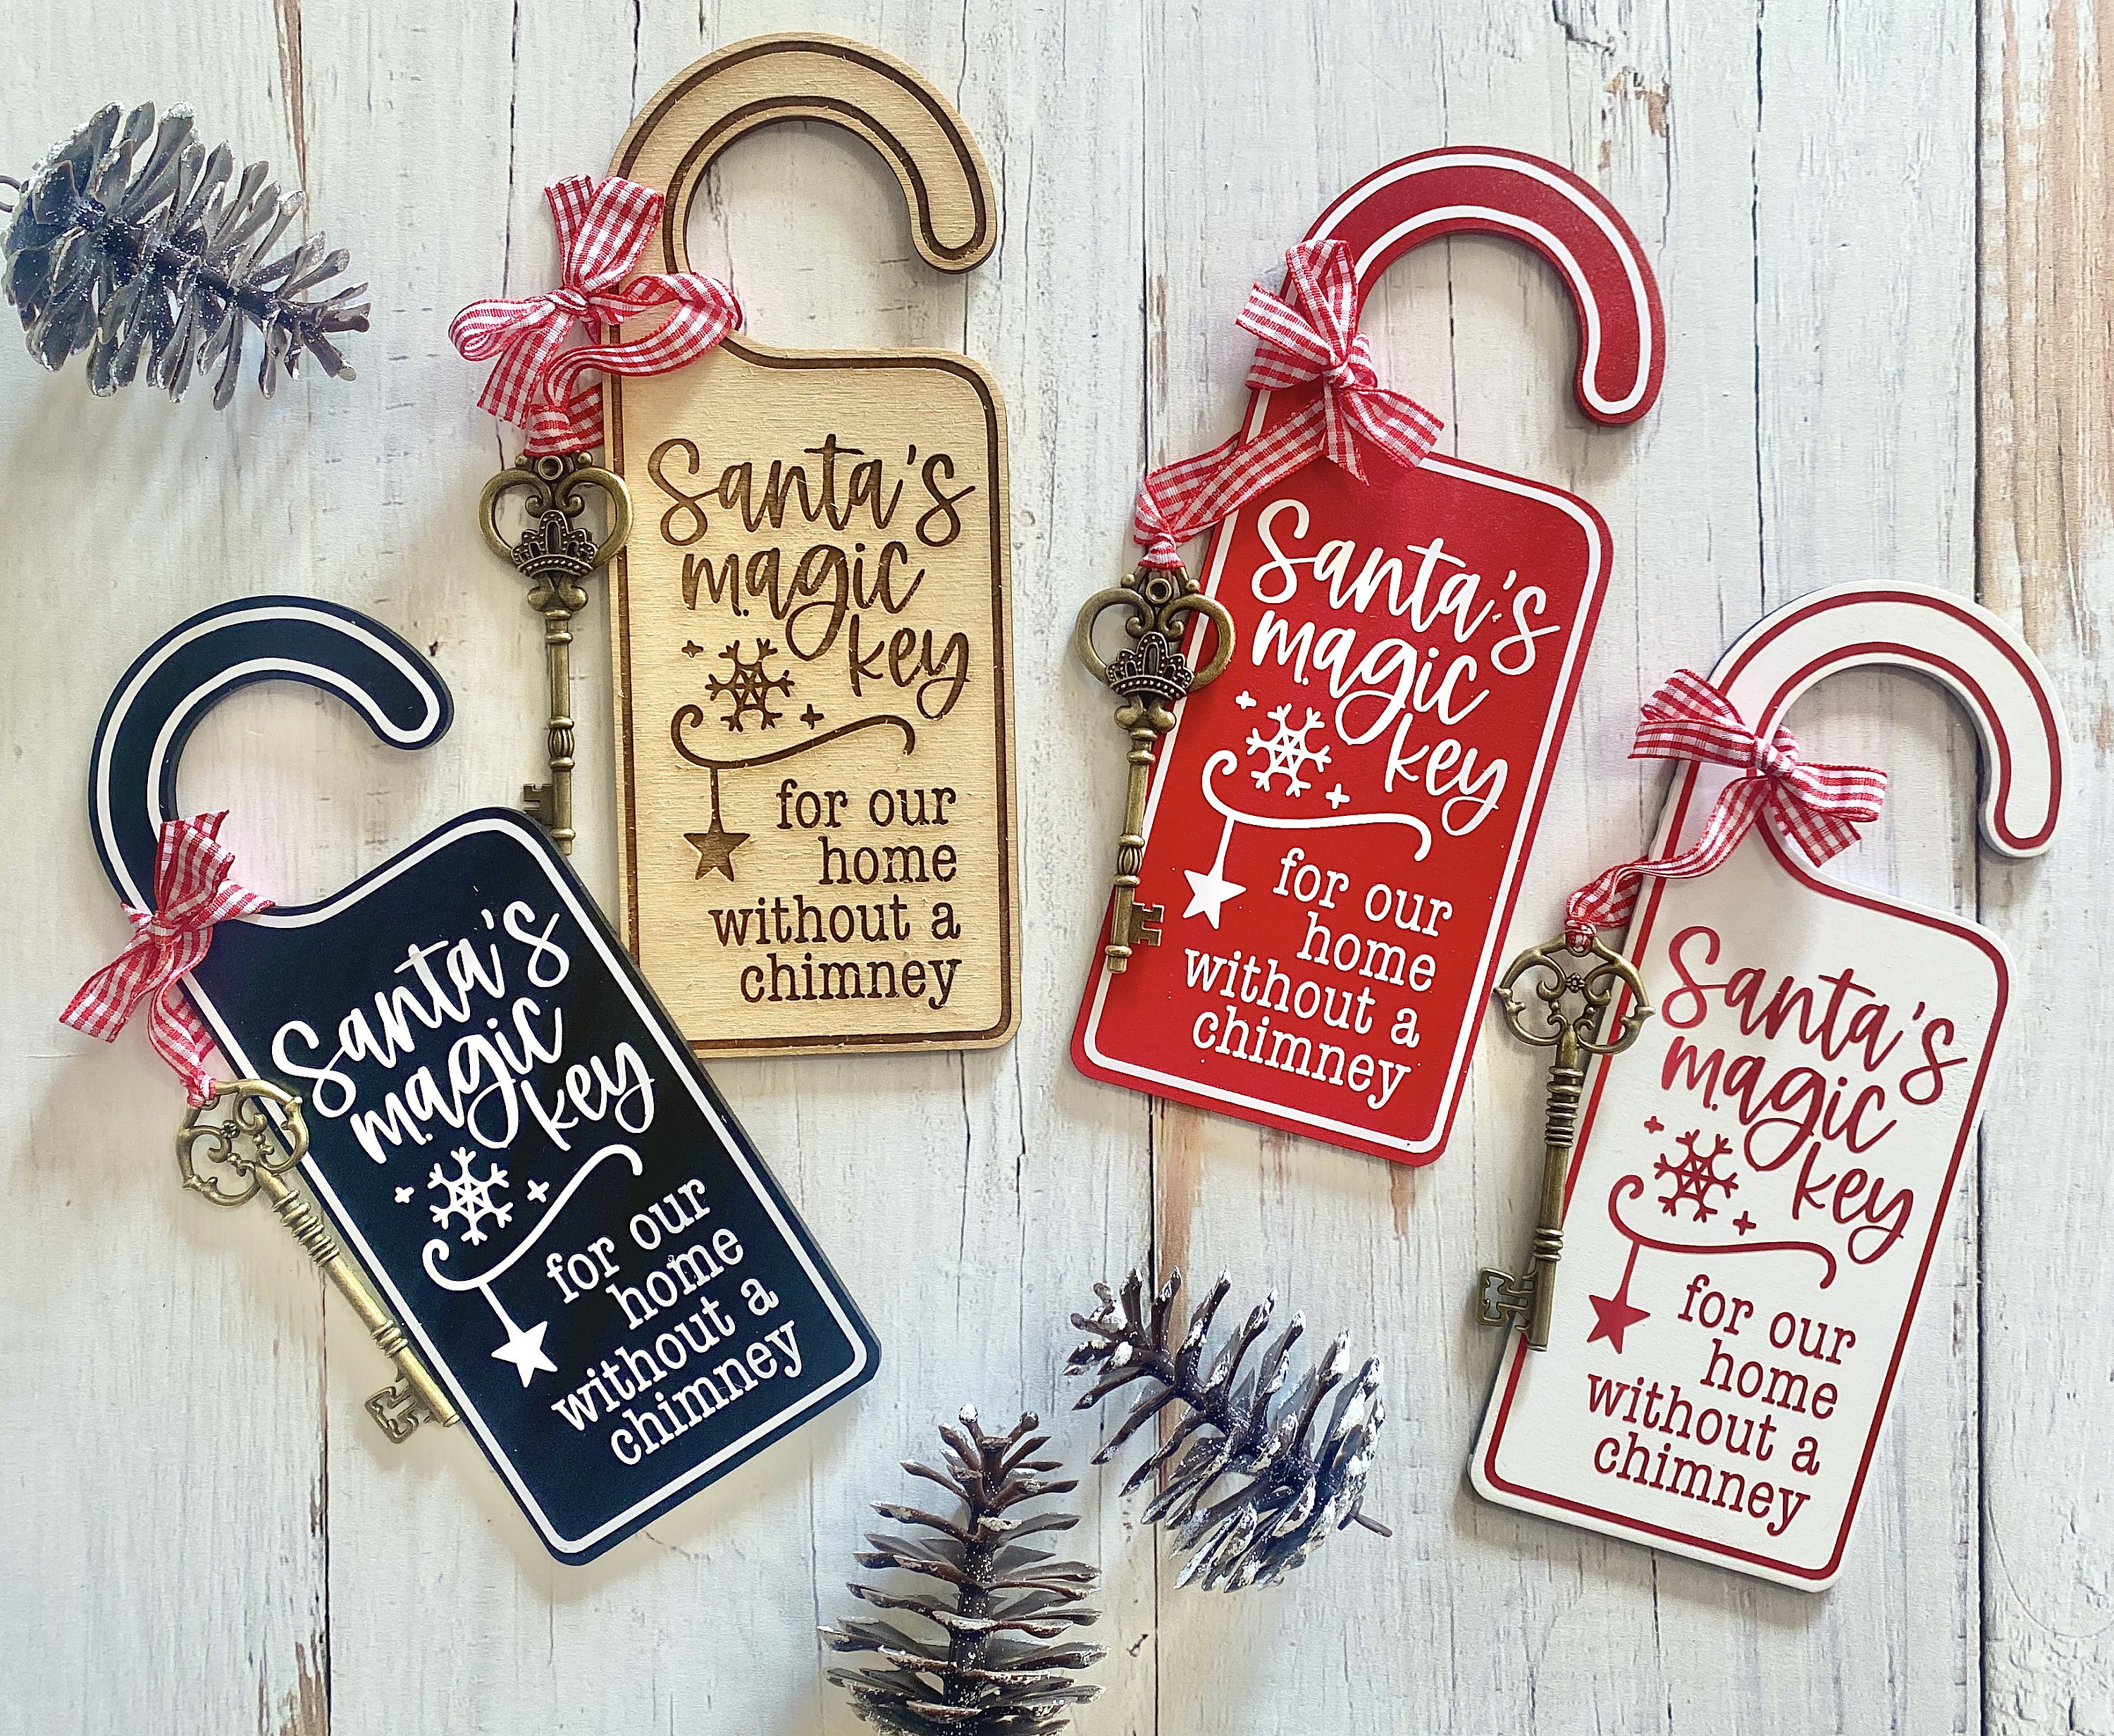 Christmas Santa Key Ornament, Santas Magic Key for No Chimney Houses, Santa  Key with Wood Engraved Wooden Tag and Red Bag and Ribbon, Vintage Santa